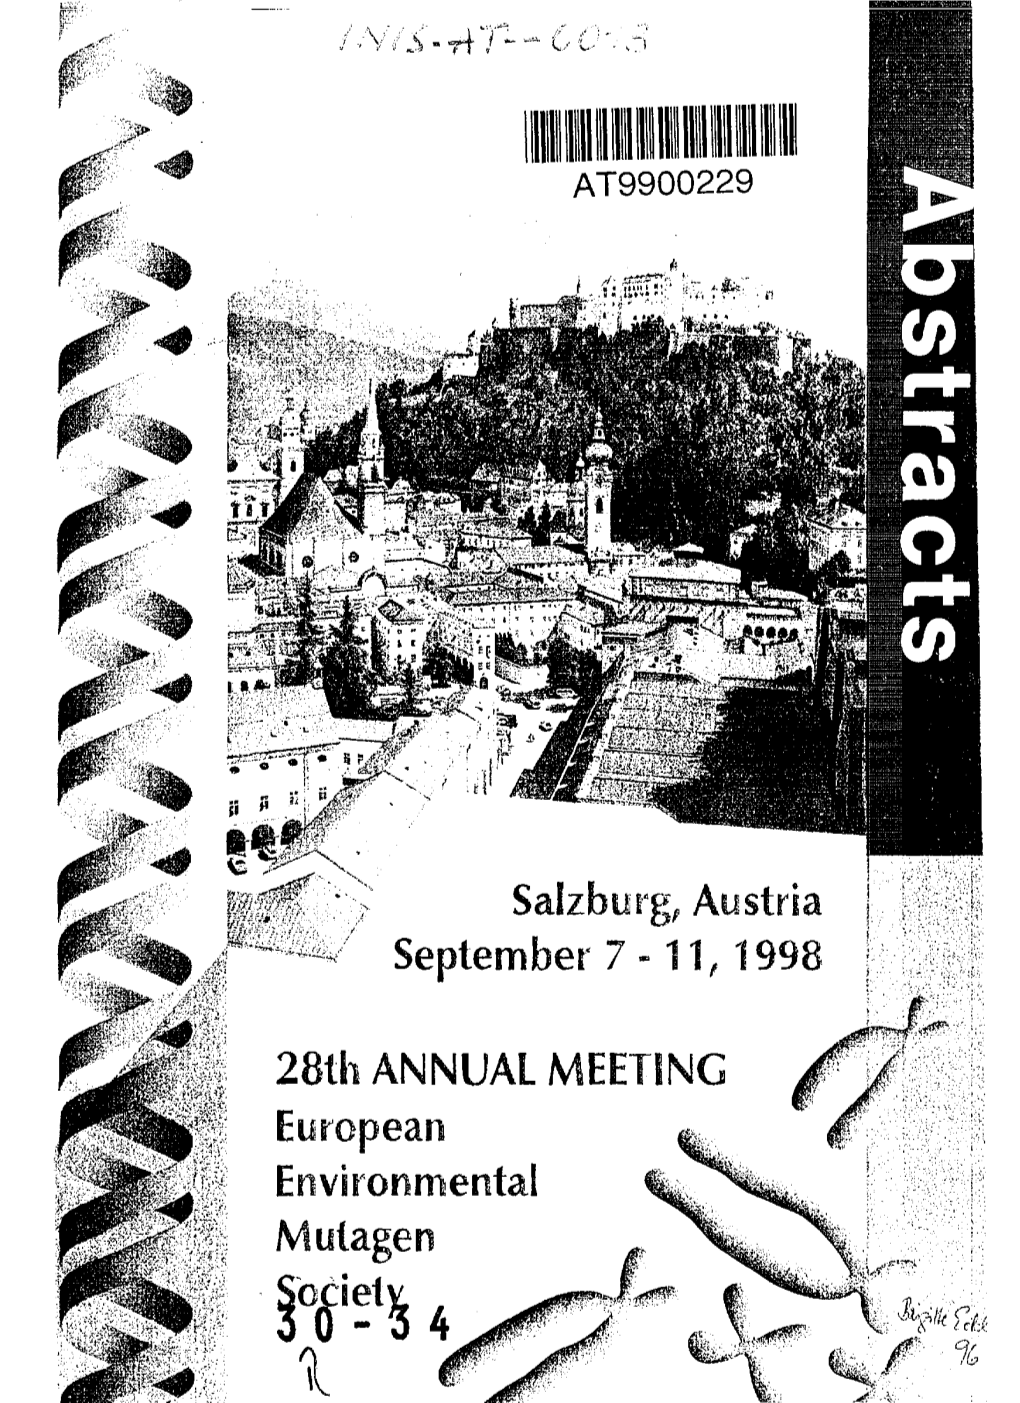 Salzburg^ Austria Septembei 7-11, 1998 28Th ANNUAL MEETING